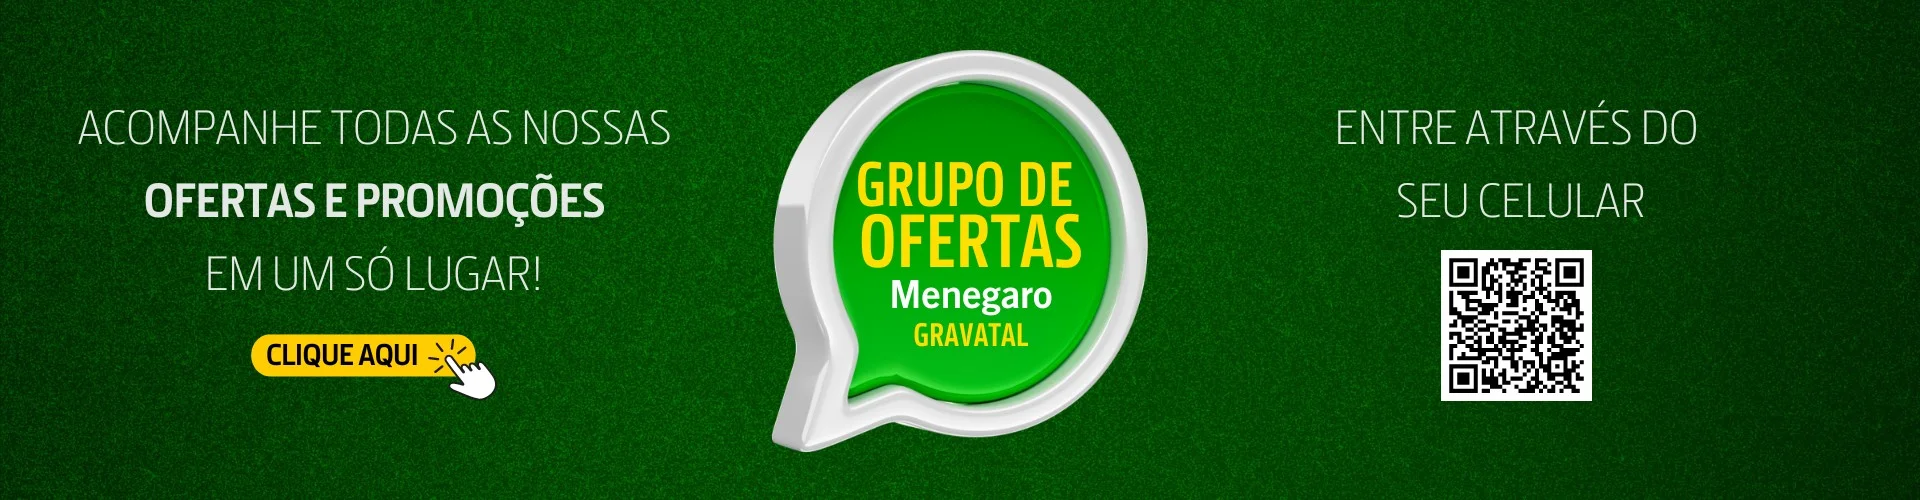 Grupo Ofertas Menegaro Gravatal